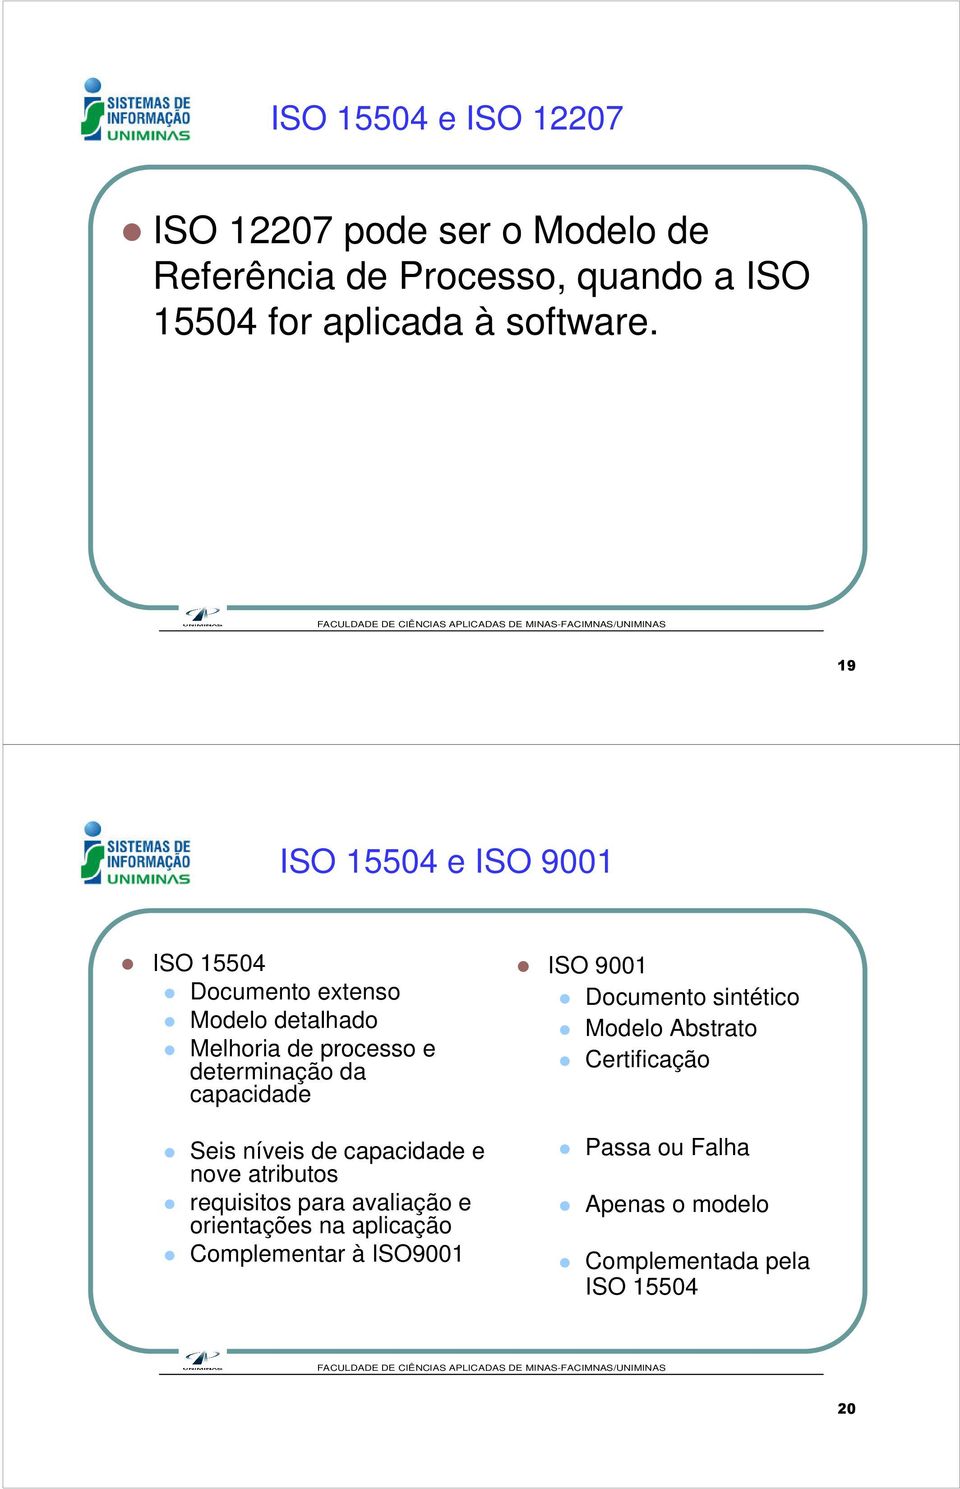 nívis capacida nov atributos rquisitos para avaliação orintaçõs aplicação Complmntar à ISO900 ISO